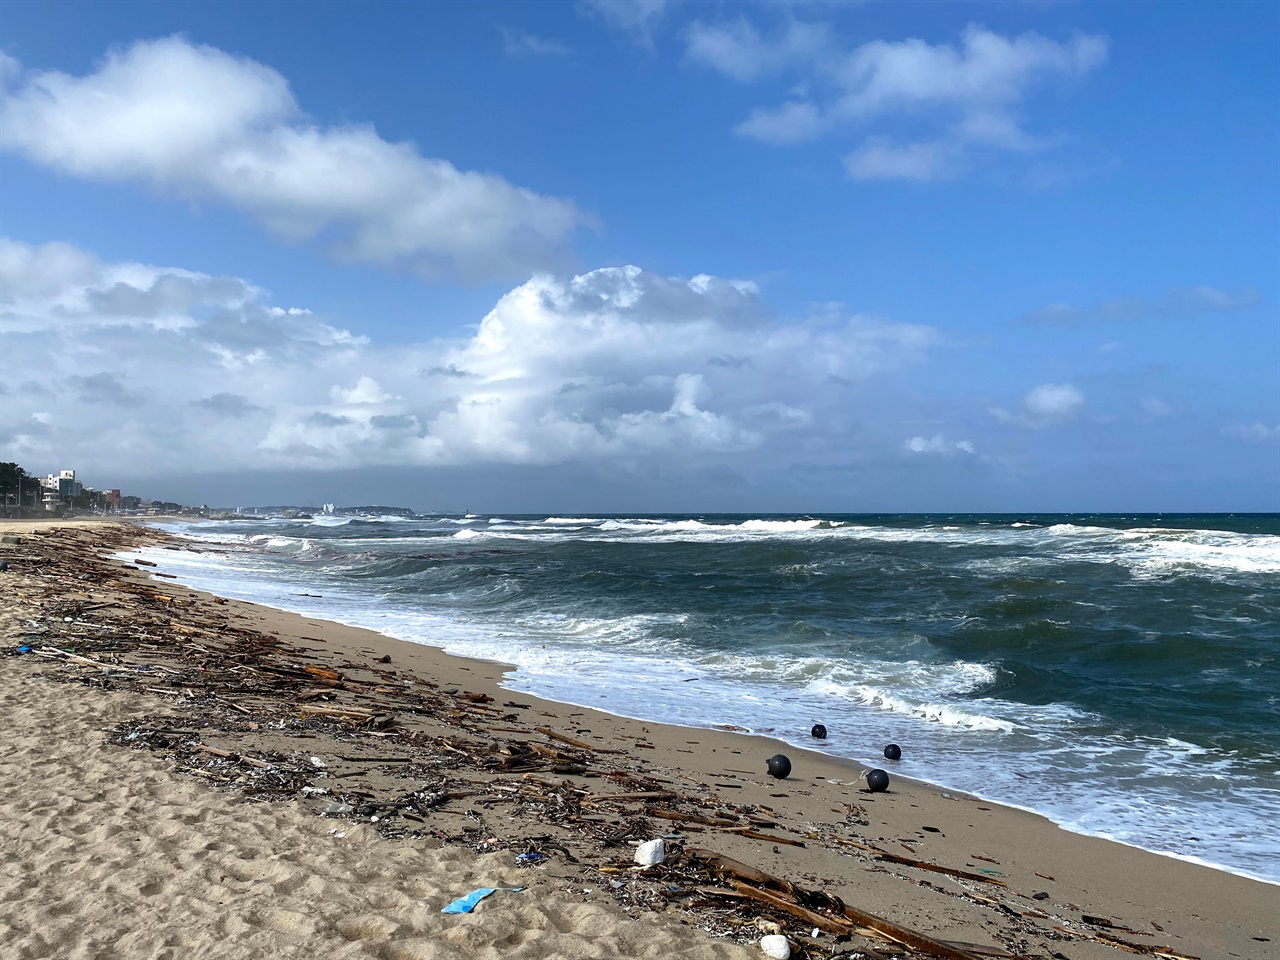 맑은 하늘과 대조적인 강릉 해변에 쌓인 쓰레기